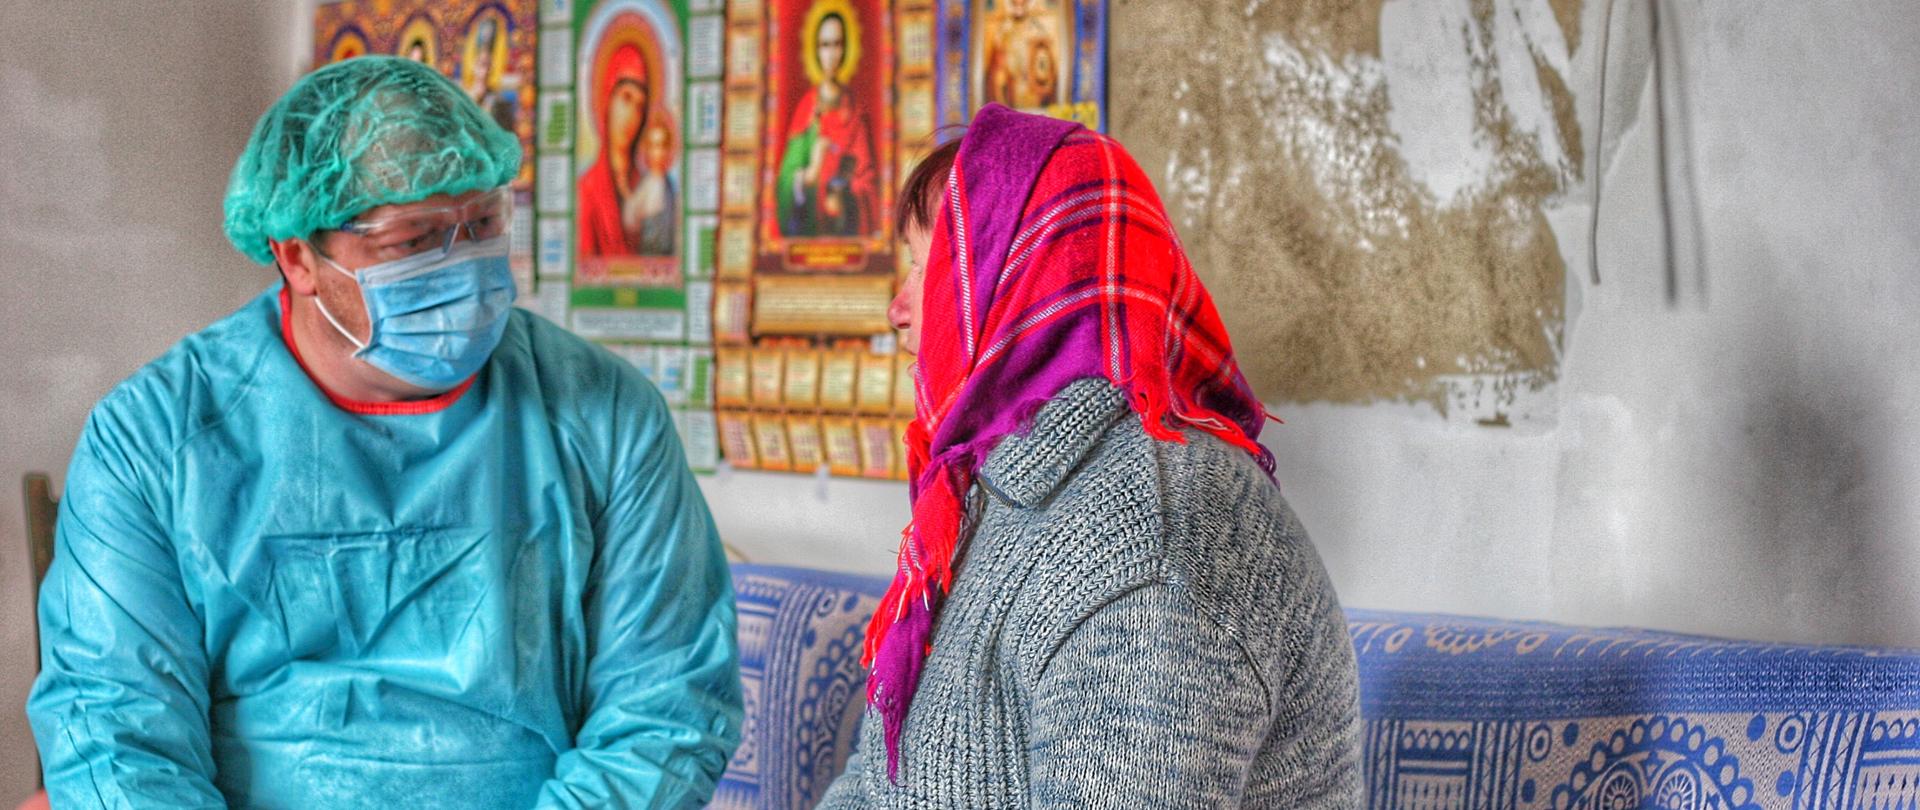 Lekarza w stroju ochronnym, maseczce i goglach rozmawia z pacjentką w kolorowej chuście w domu, w którym widnieją obrazy świętych.